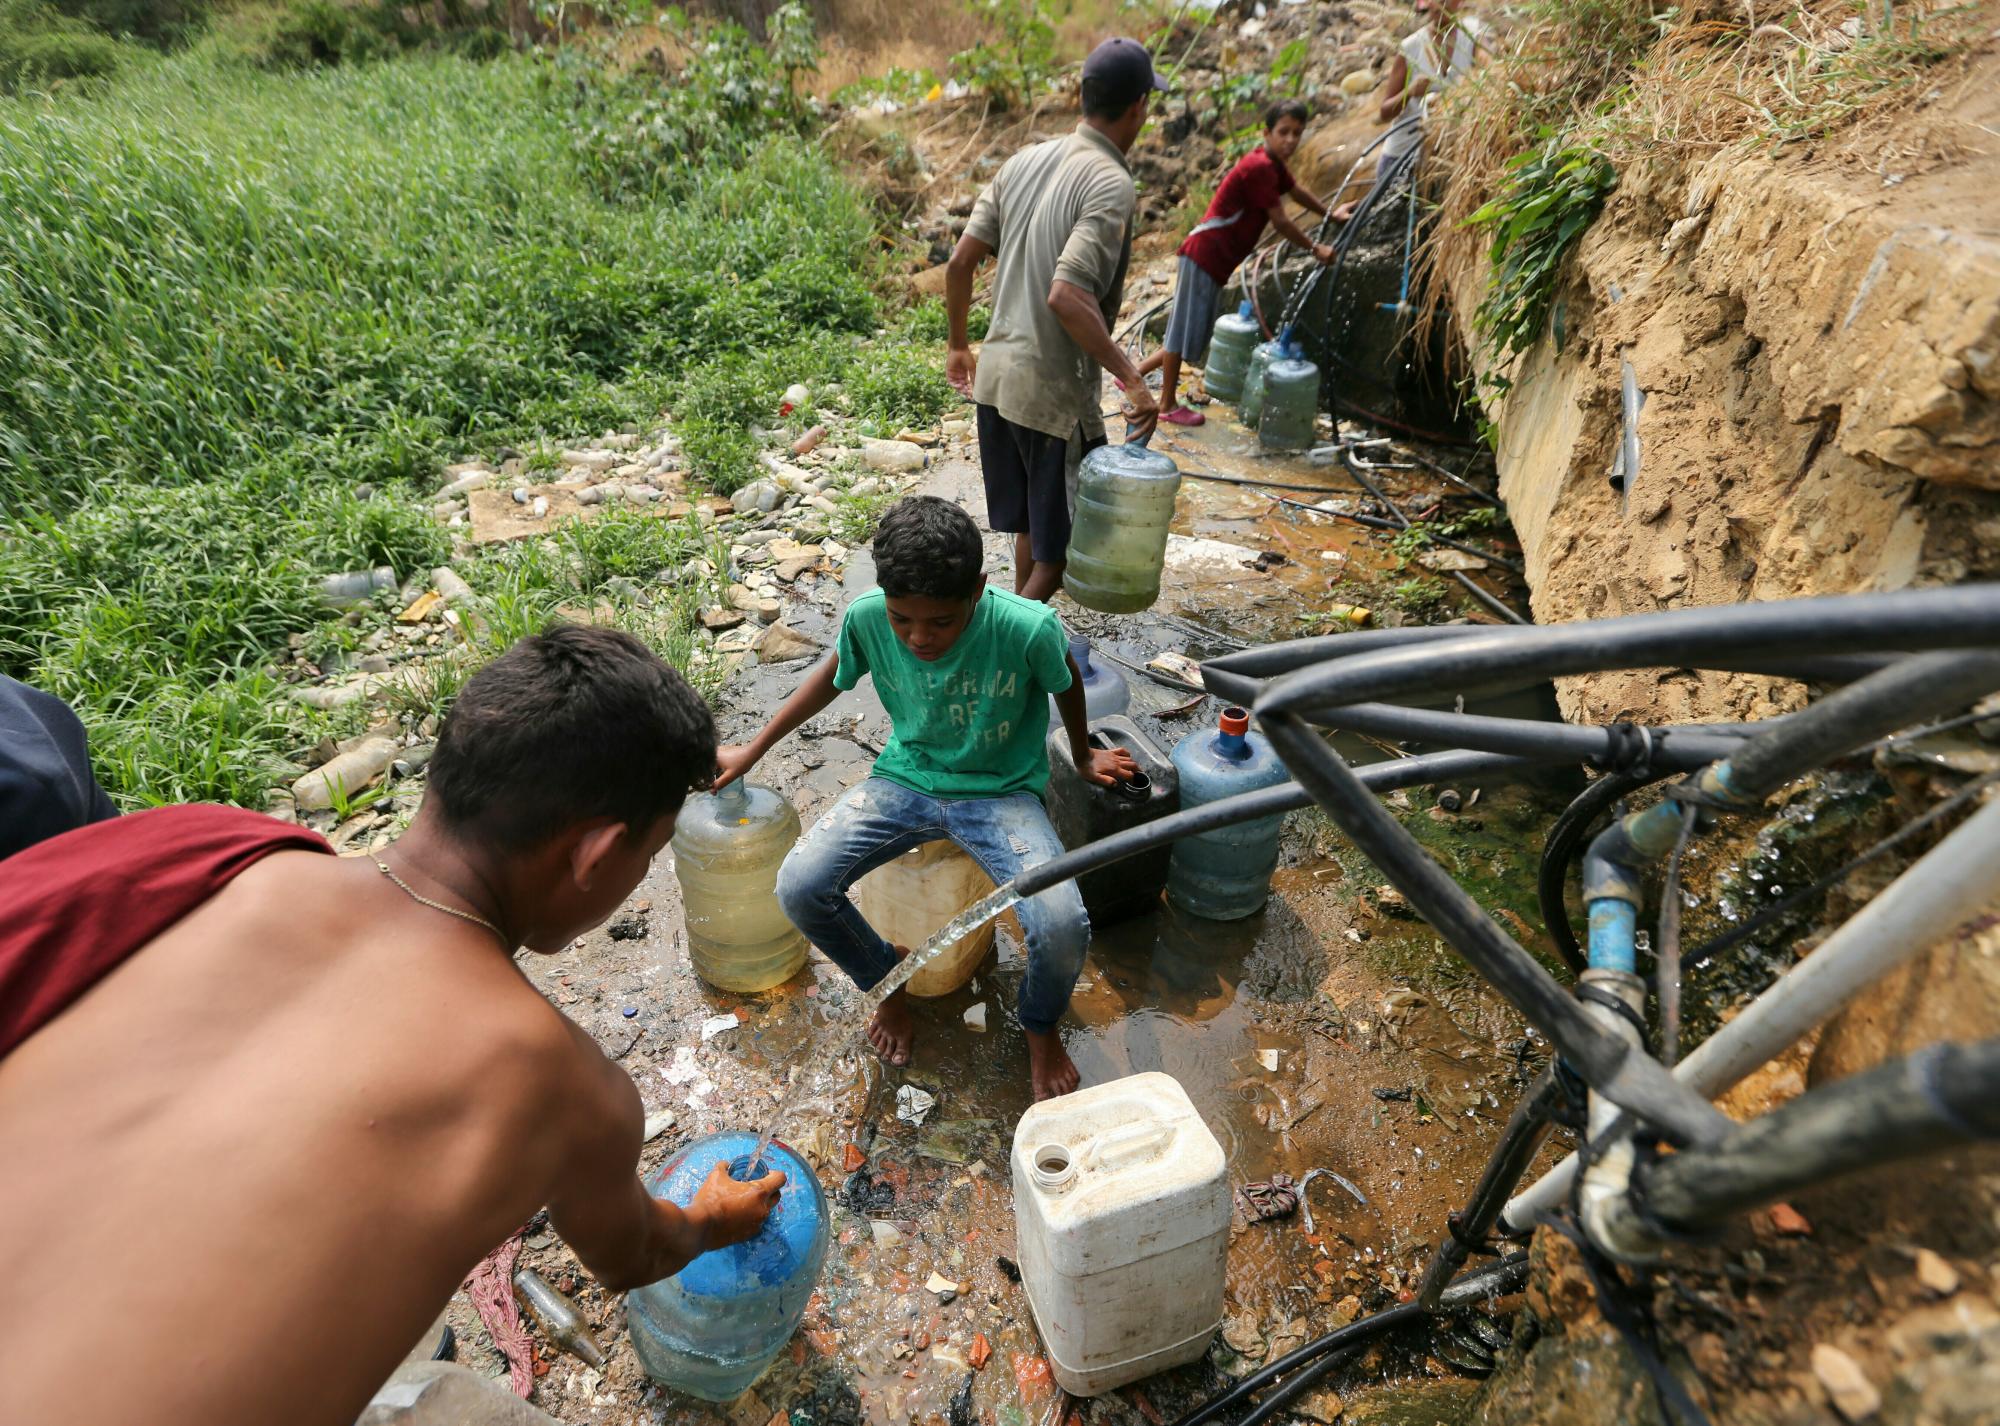 Personas recolectan agua dulce de tuberías rotas cerca de una barriada en Maracaibo, Venezuela, el sábado 13 de abril de 2019. Desde que se produjo una falla eléctrica masiva el 7 de marzo, la nación ha sufrido apagones casi todos los días y una falla en servicios críticos como agua corriente y transporte público.